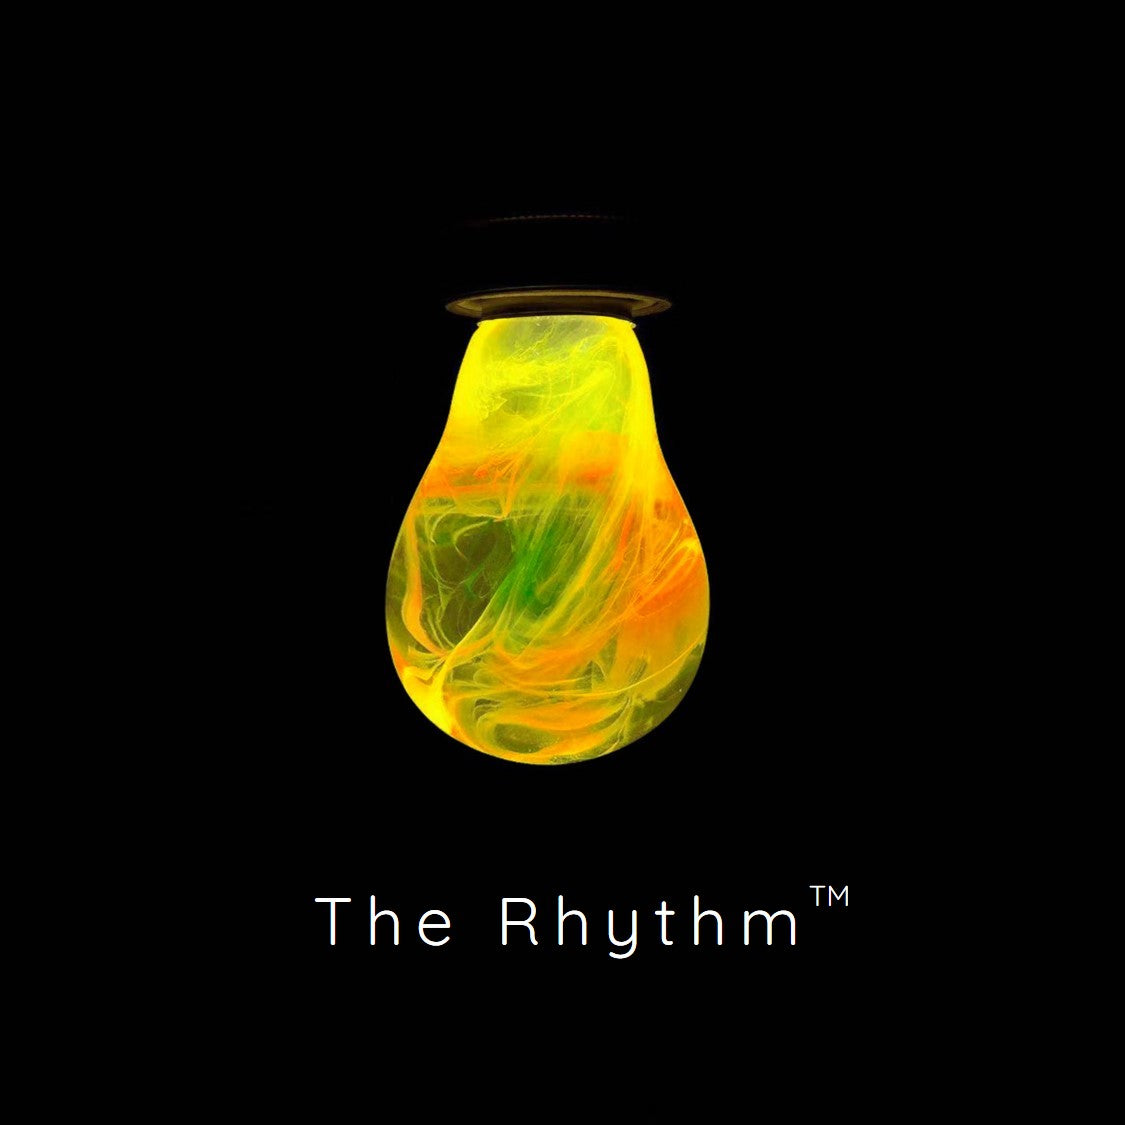 The Rhythm™